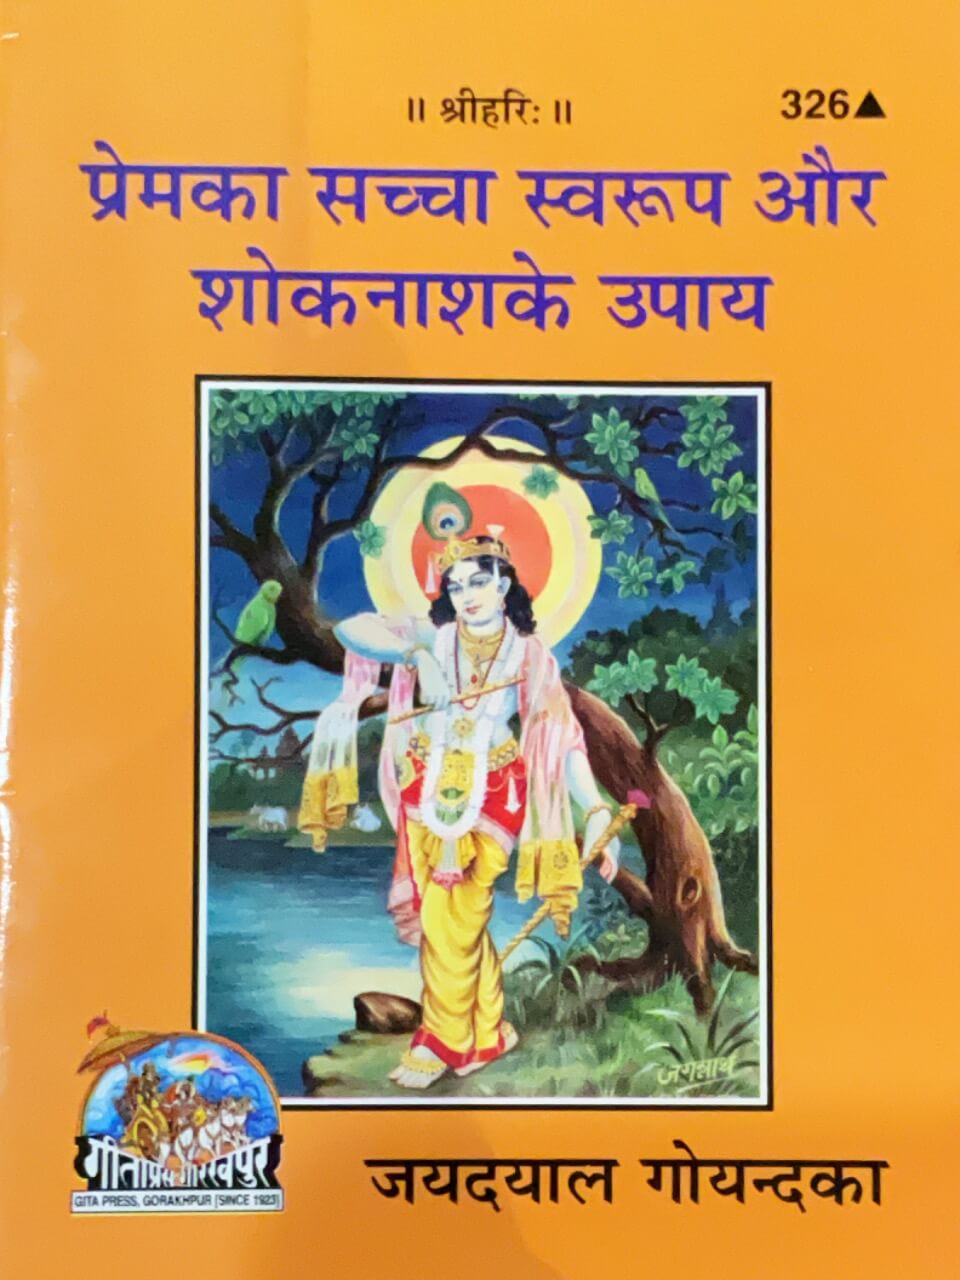 SANATAN Prem Ka Sachcha Svaroop, Shok Naash Ke Upaay by Gita Press